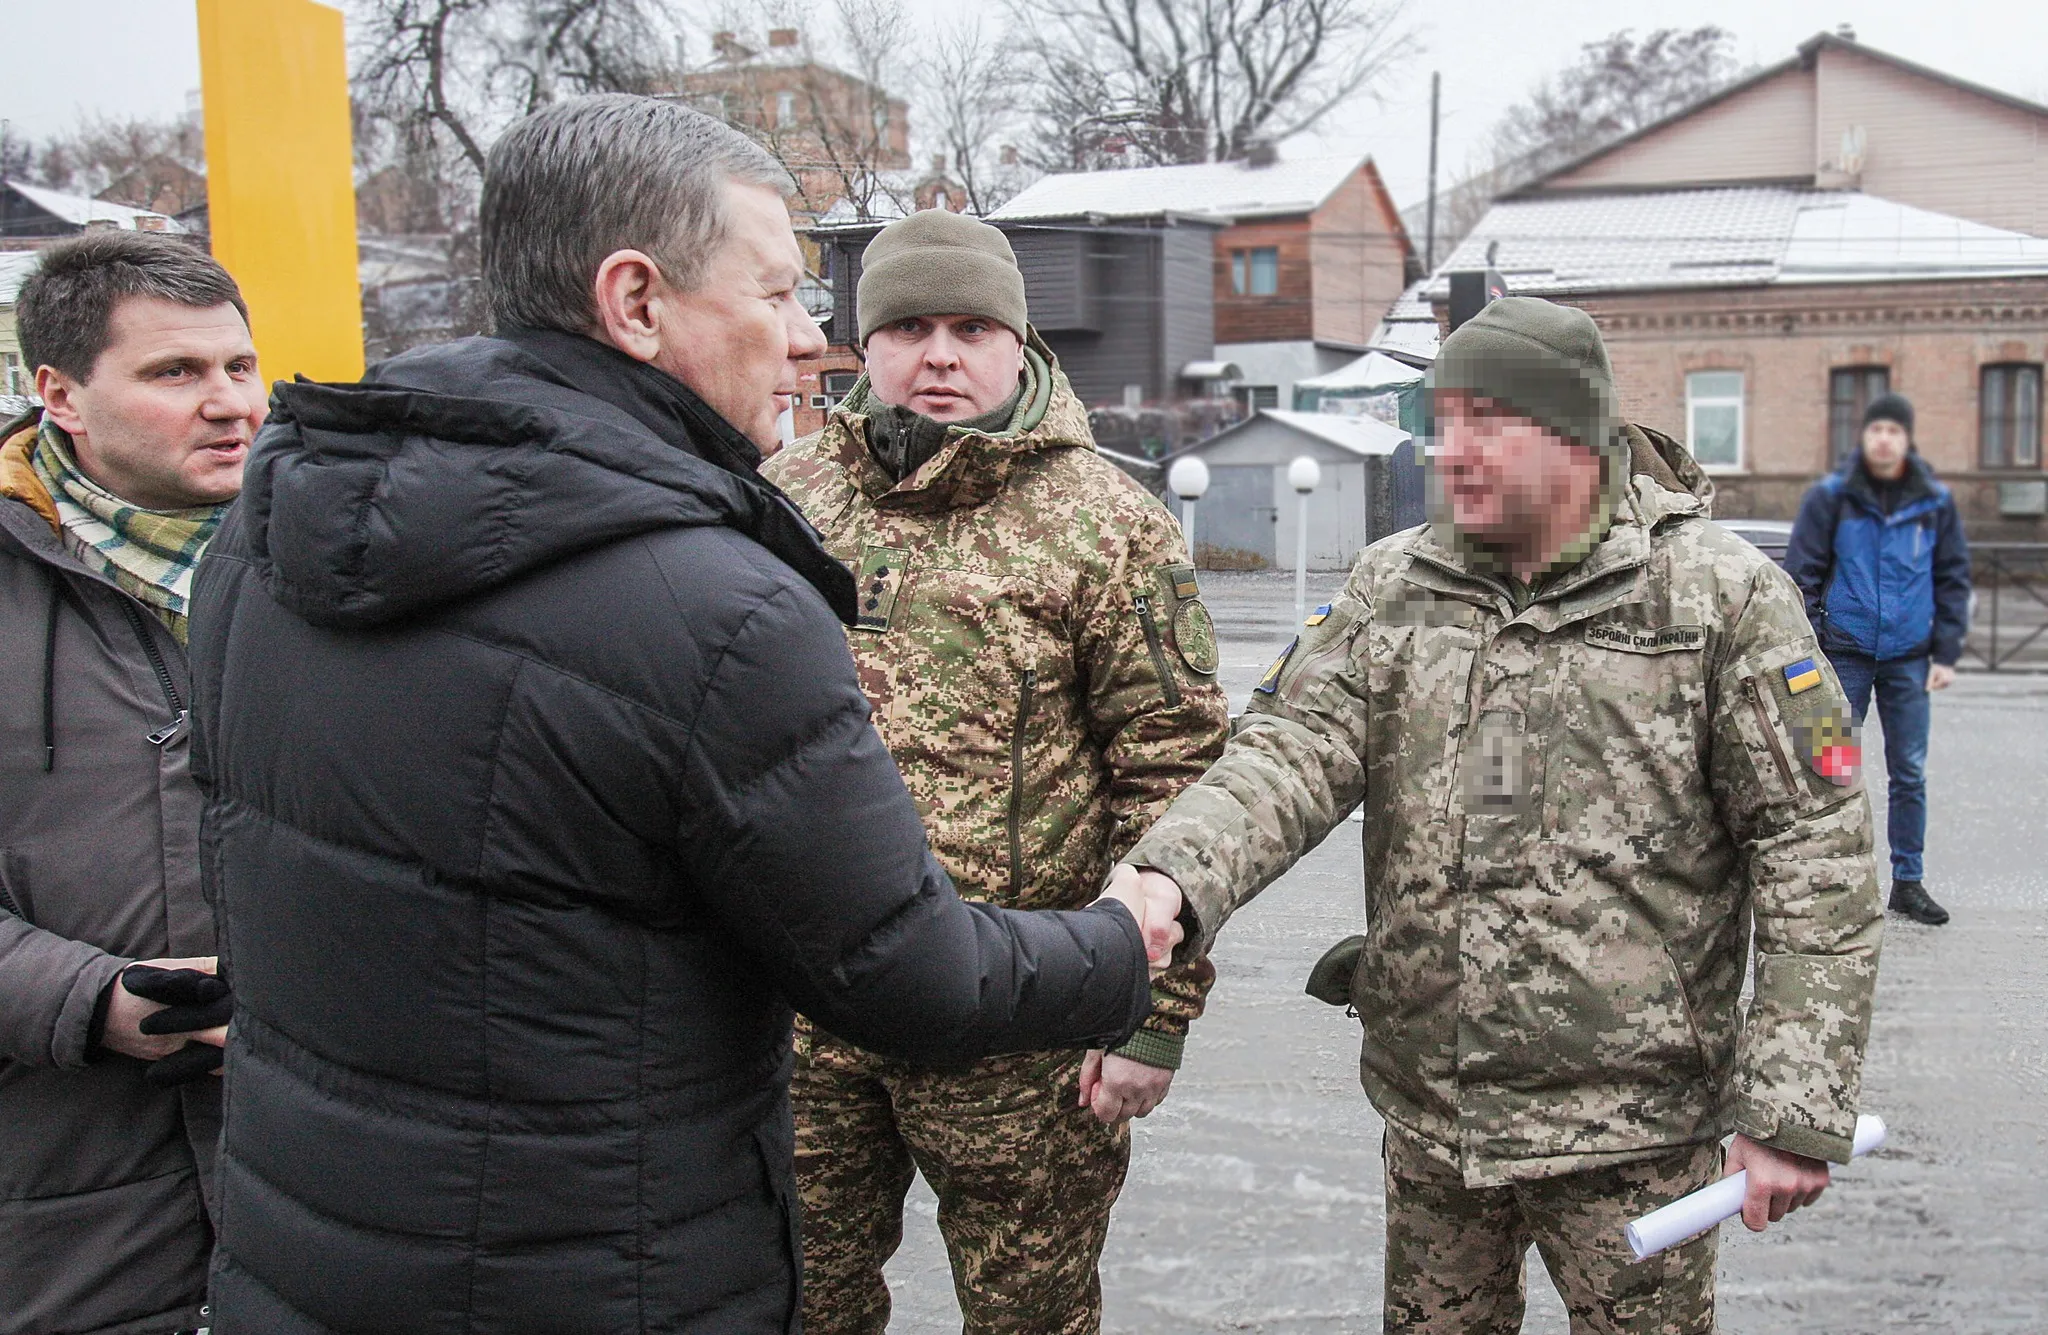 Вінницький міський  голова передав військовим на фронт два автомобіля в межах роботи Міжрегіонального координаційного гуманітарного штабу